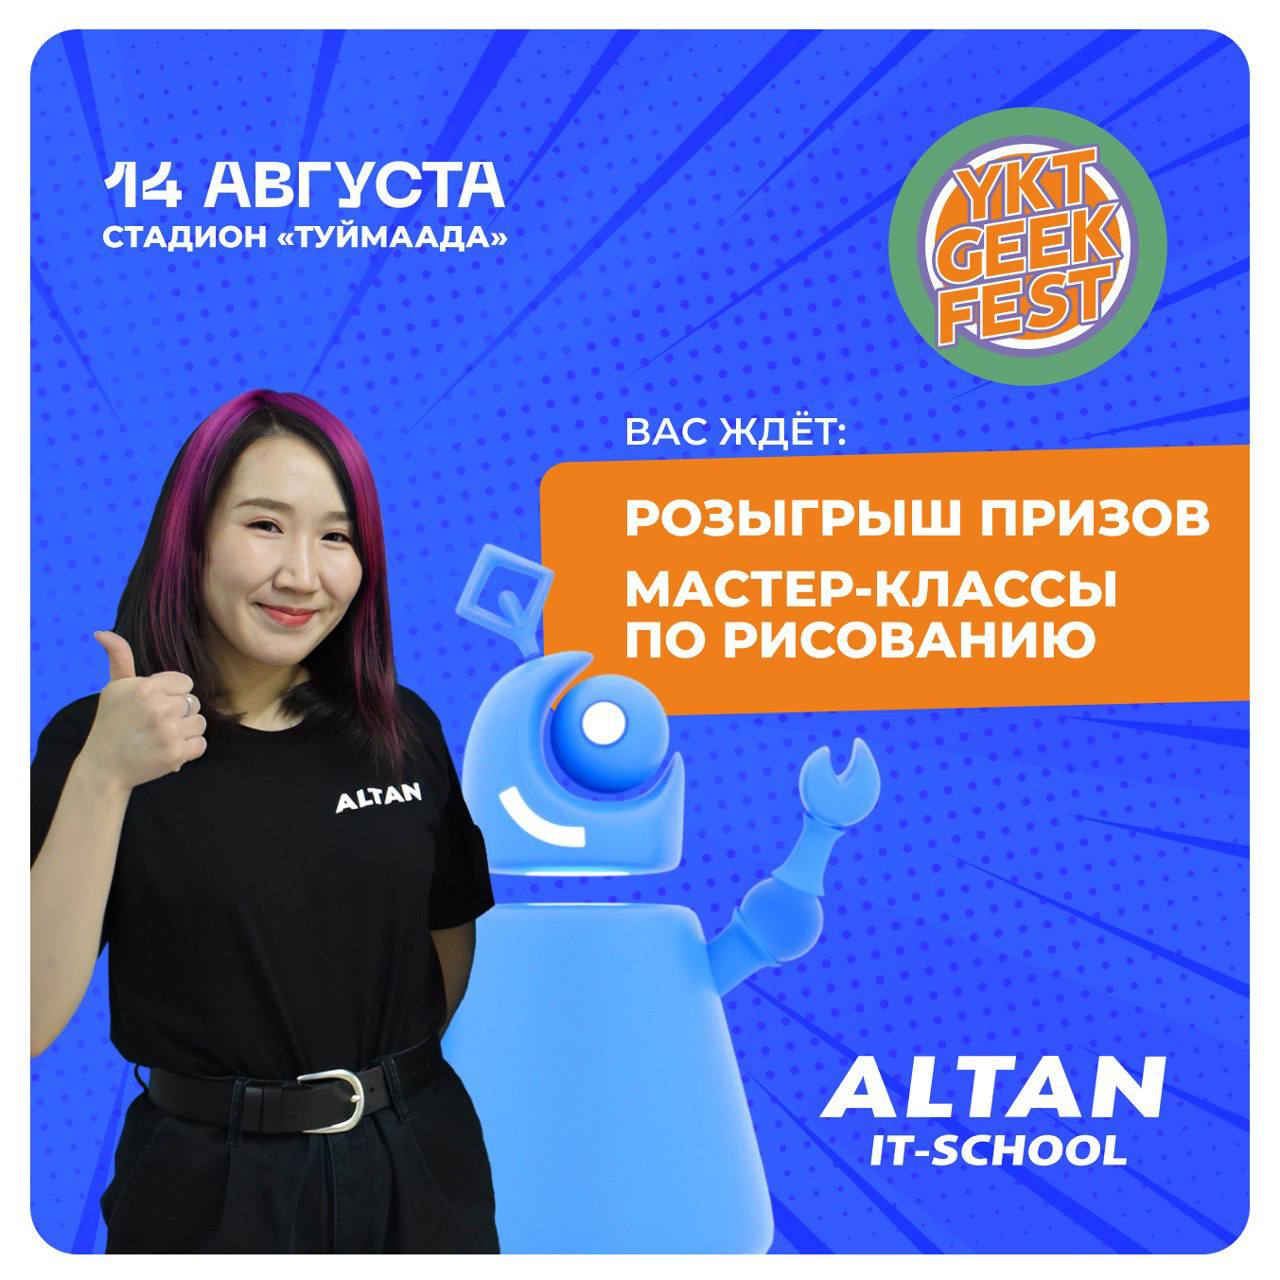 14 августа 2022 года 12:00 в Якутске начнется 7-й фестиваль популярной культуры Ykt Geek Fest!